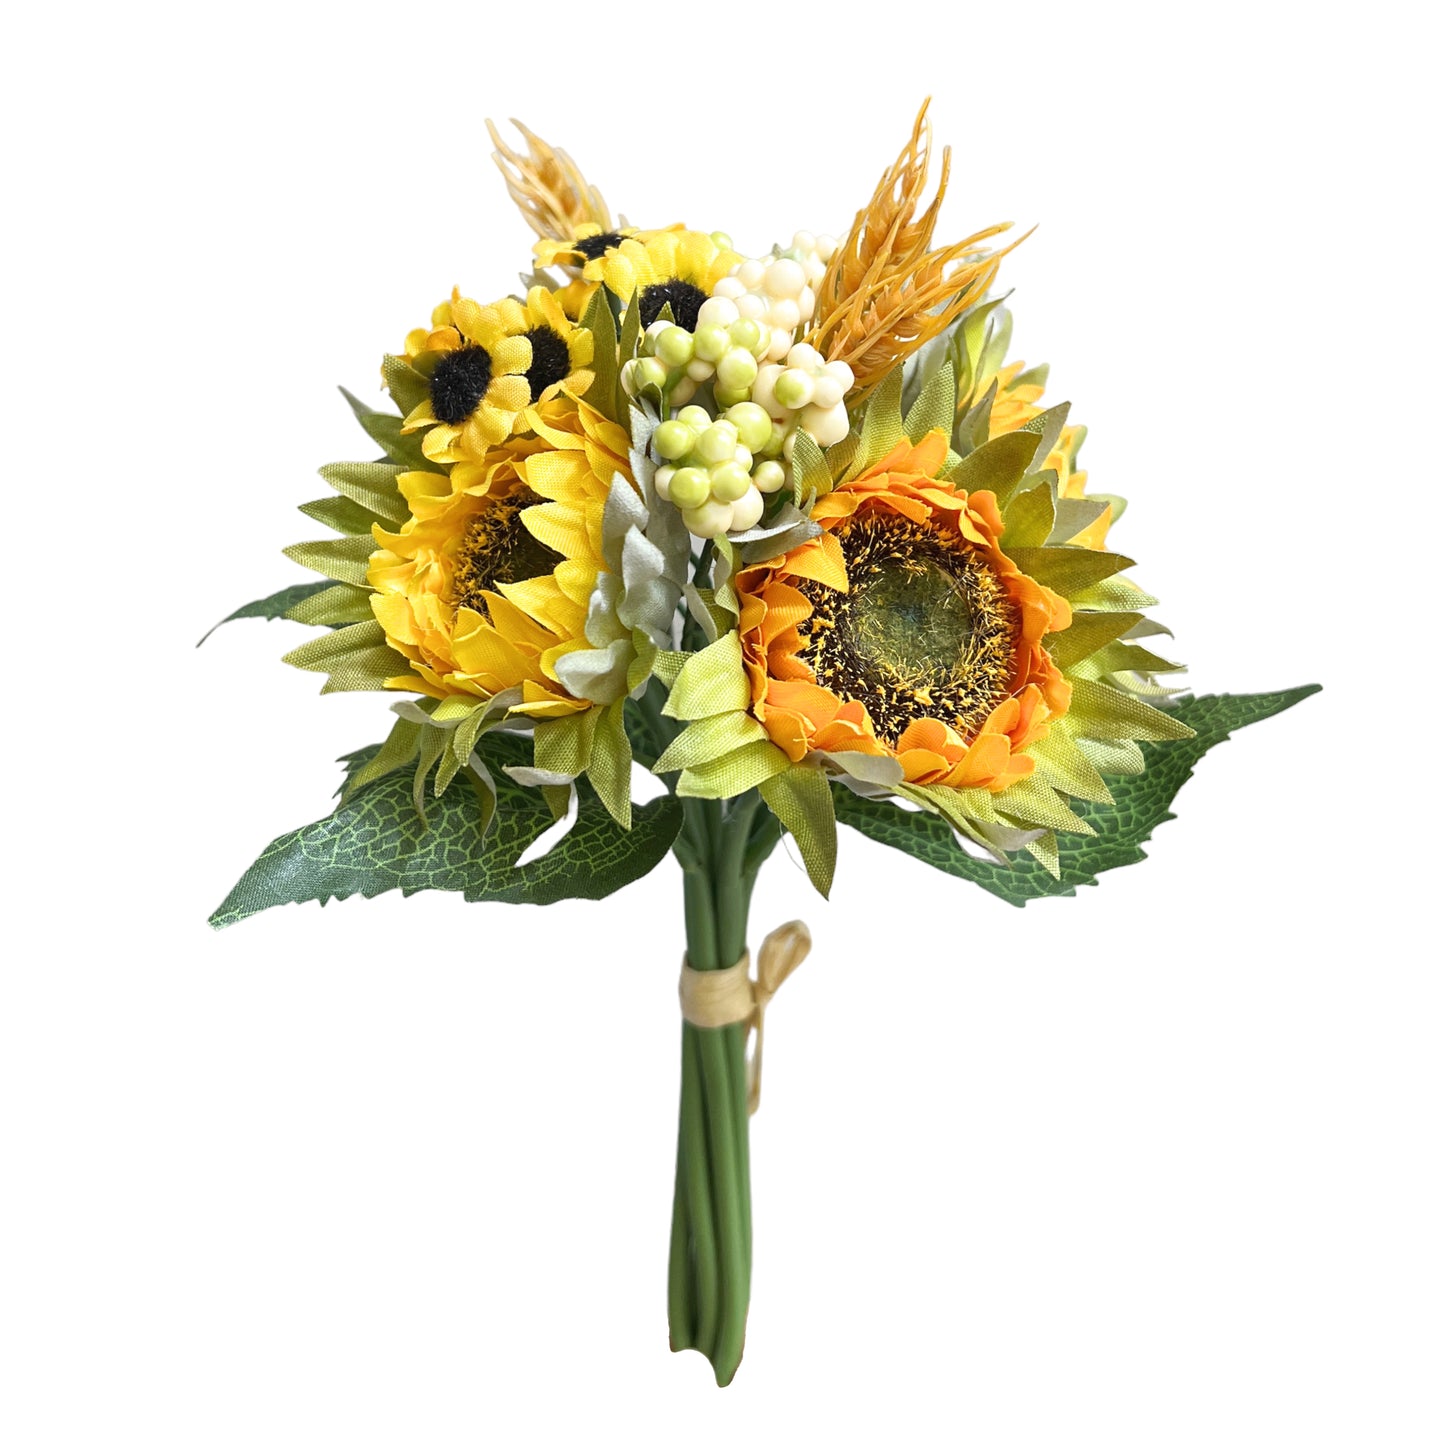 Artificial Sunflower Bouquet for Home Decor and Floral Arrangements